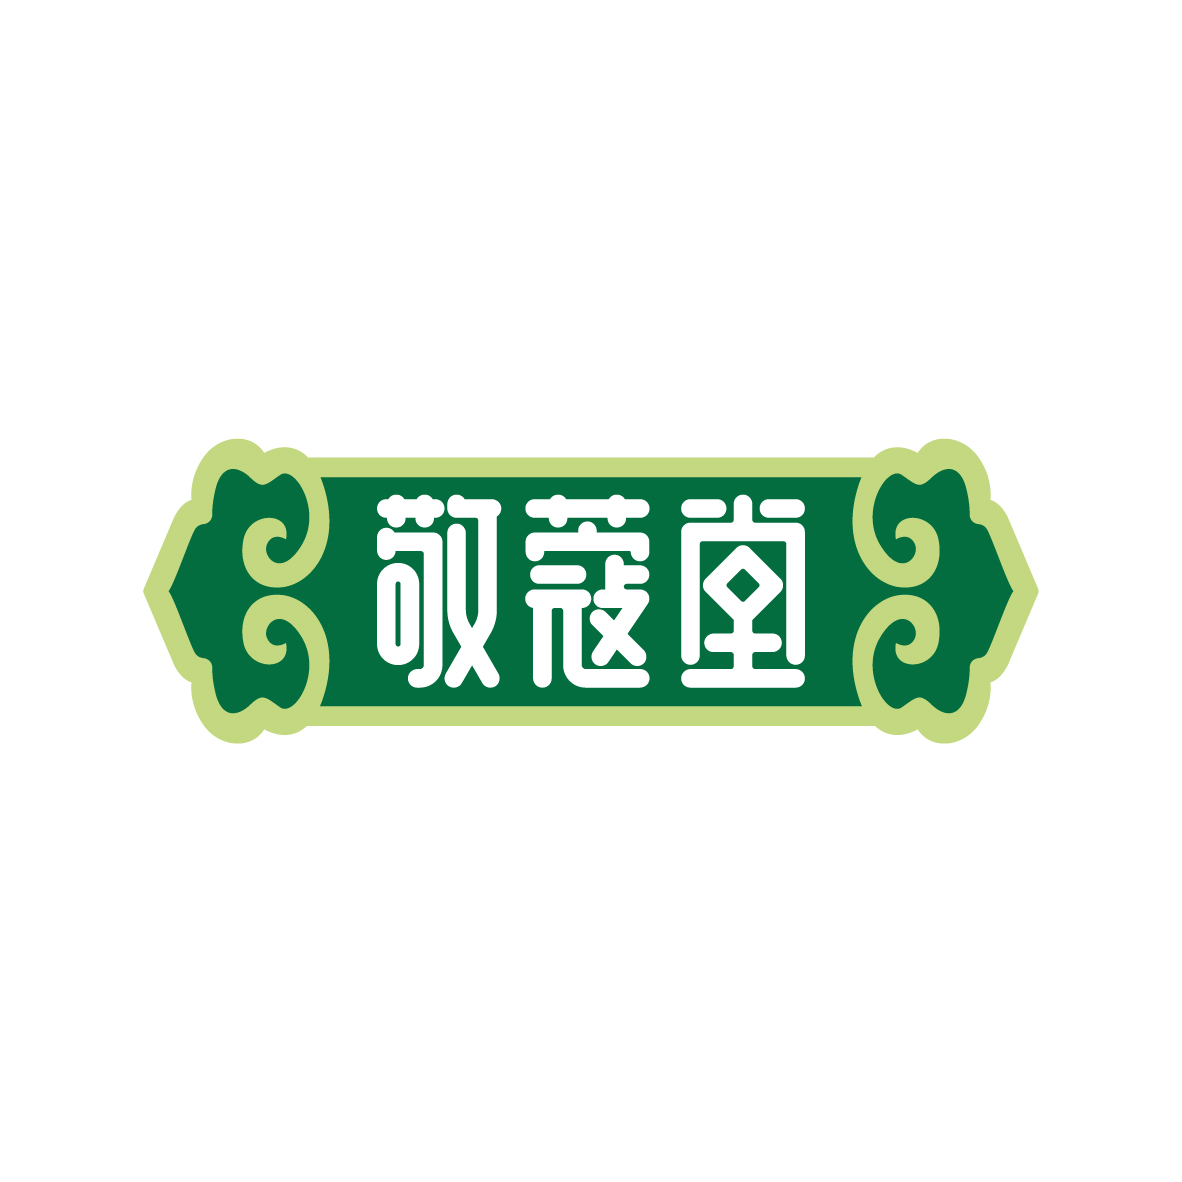 广州市龙曦生物科技有限公司商标敬蔻堂（03类）商标转让流程及费用